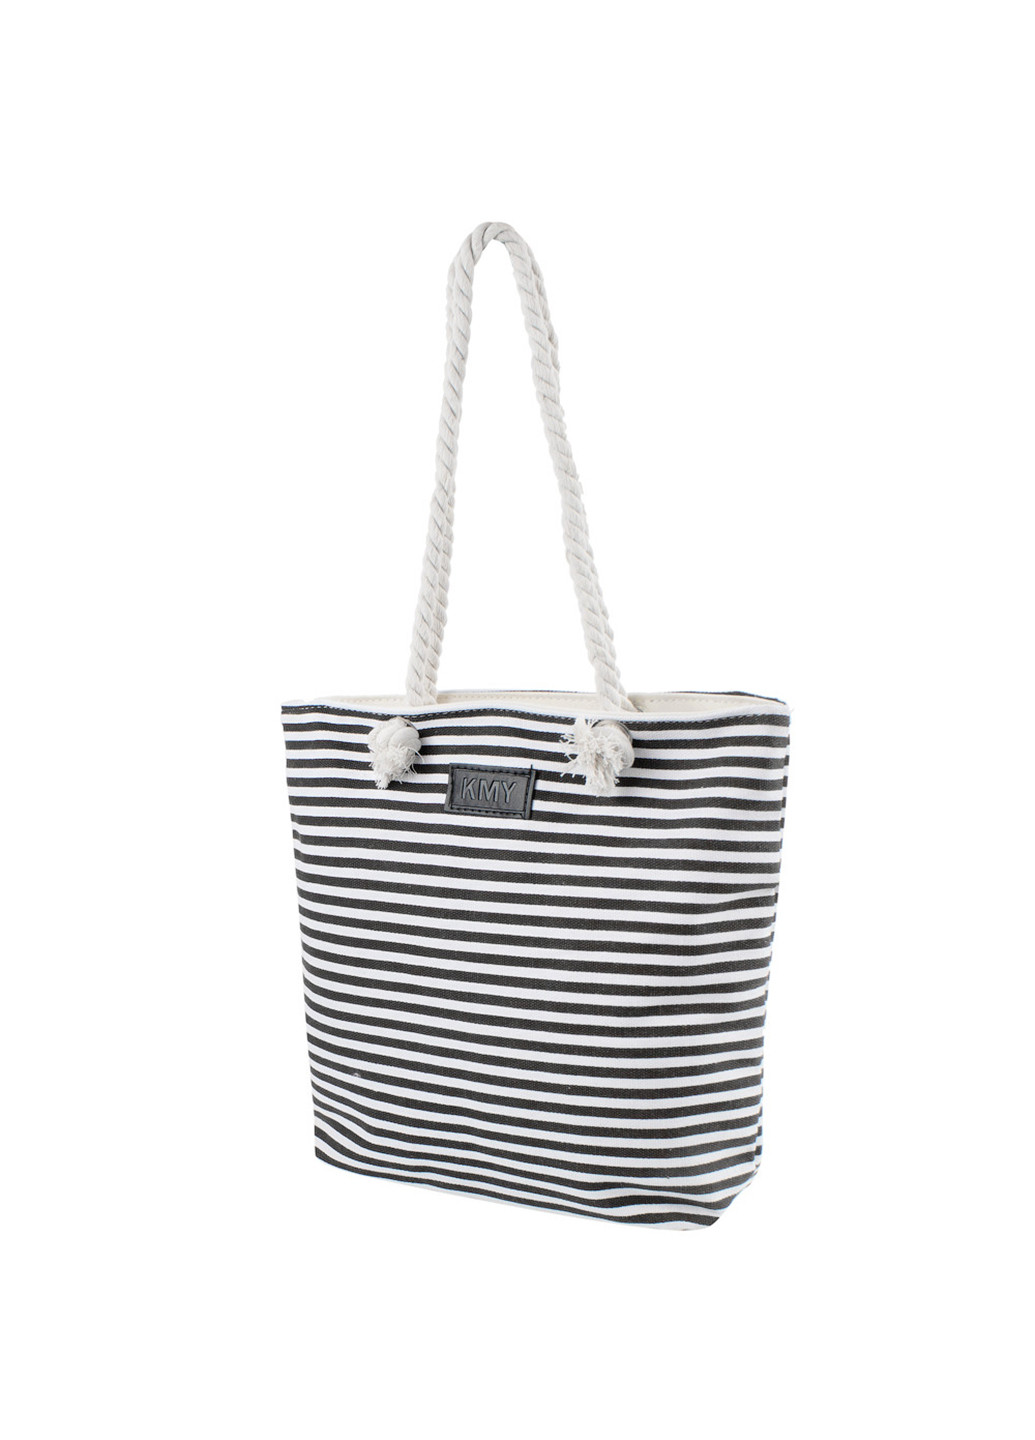 Жіноча пляжна сумка 34,5х32,5х9,5 см KMY (255709763)